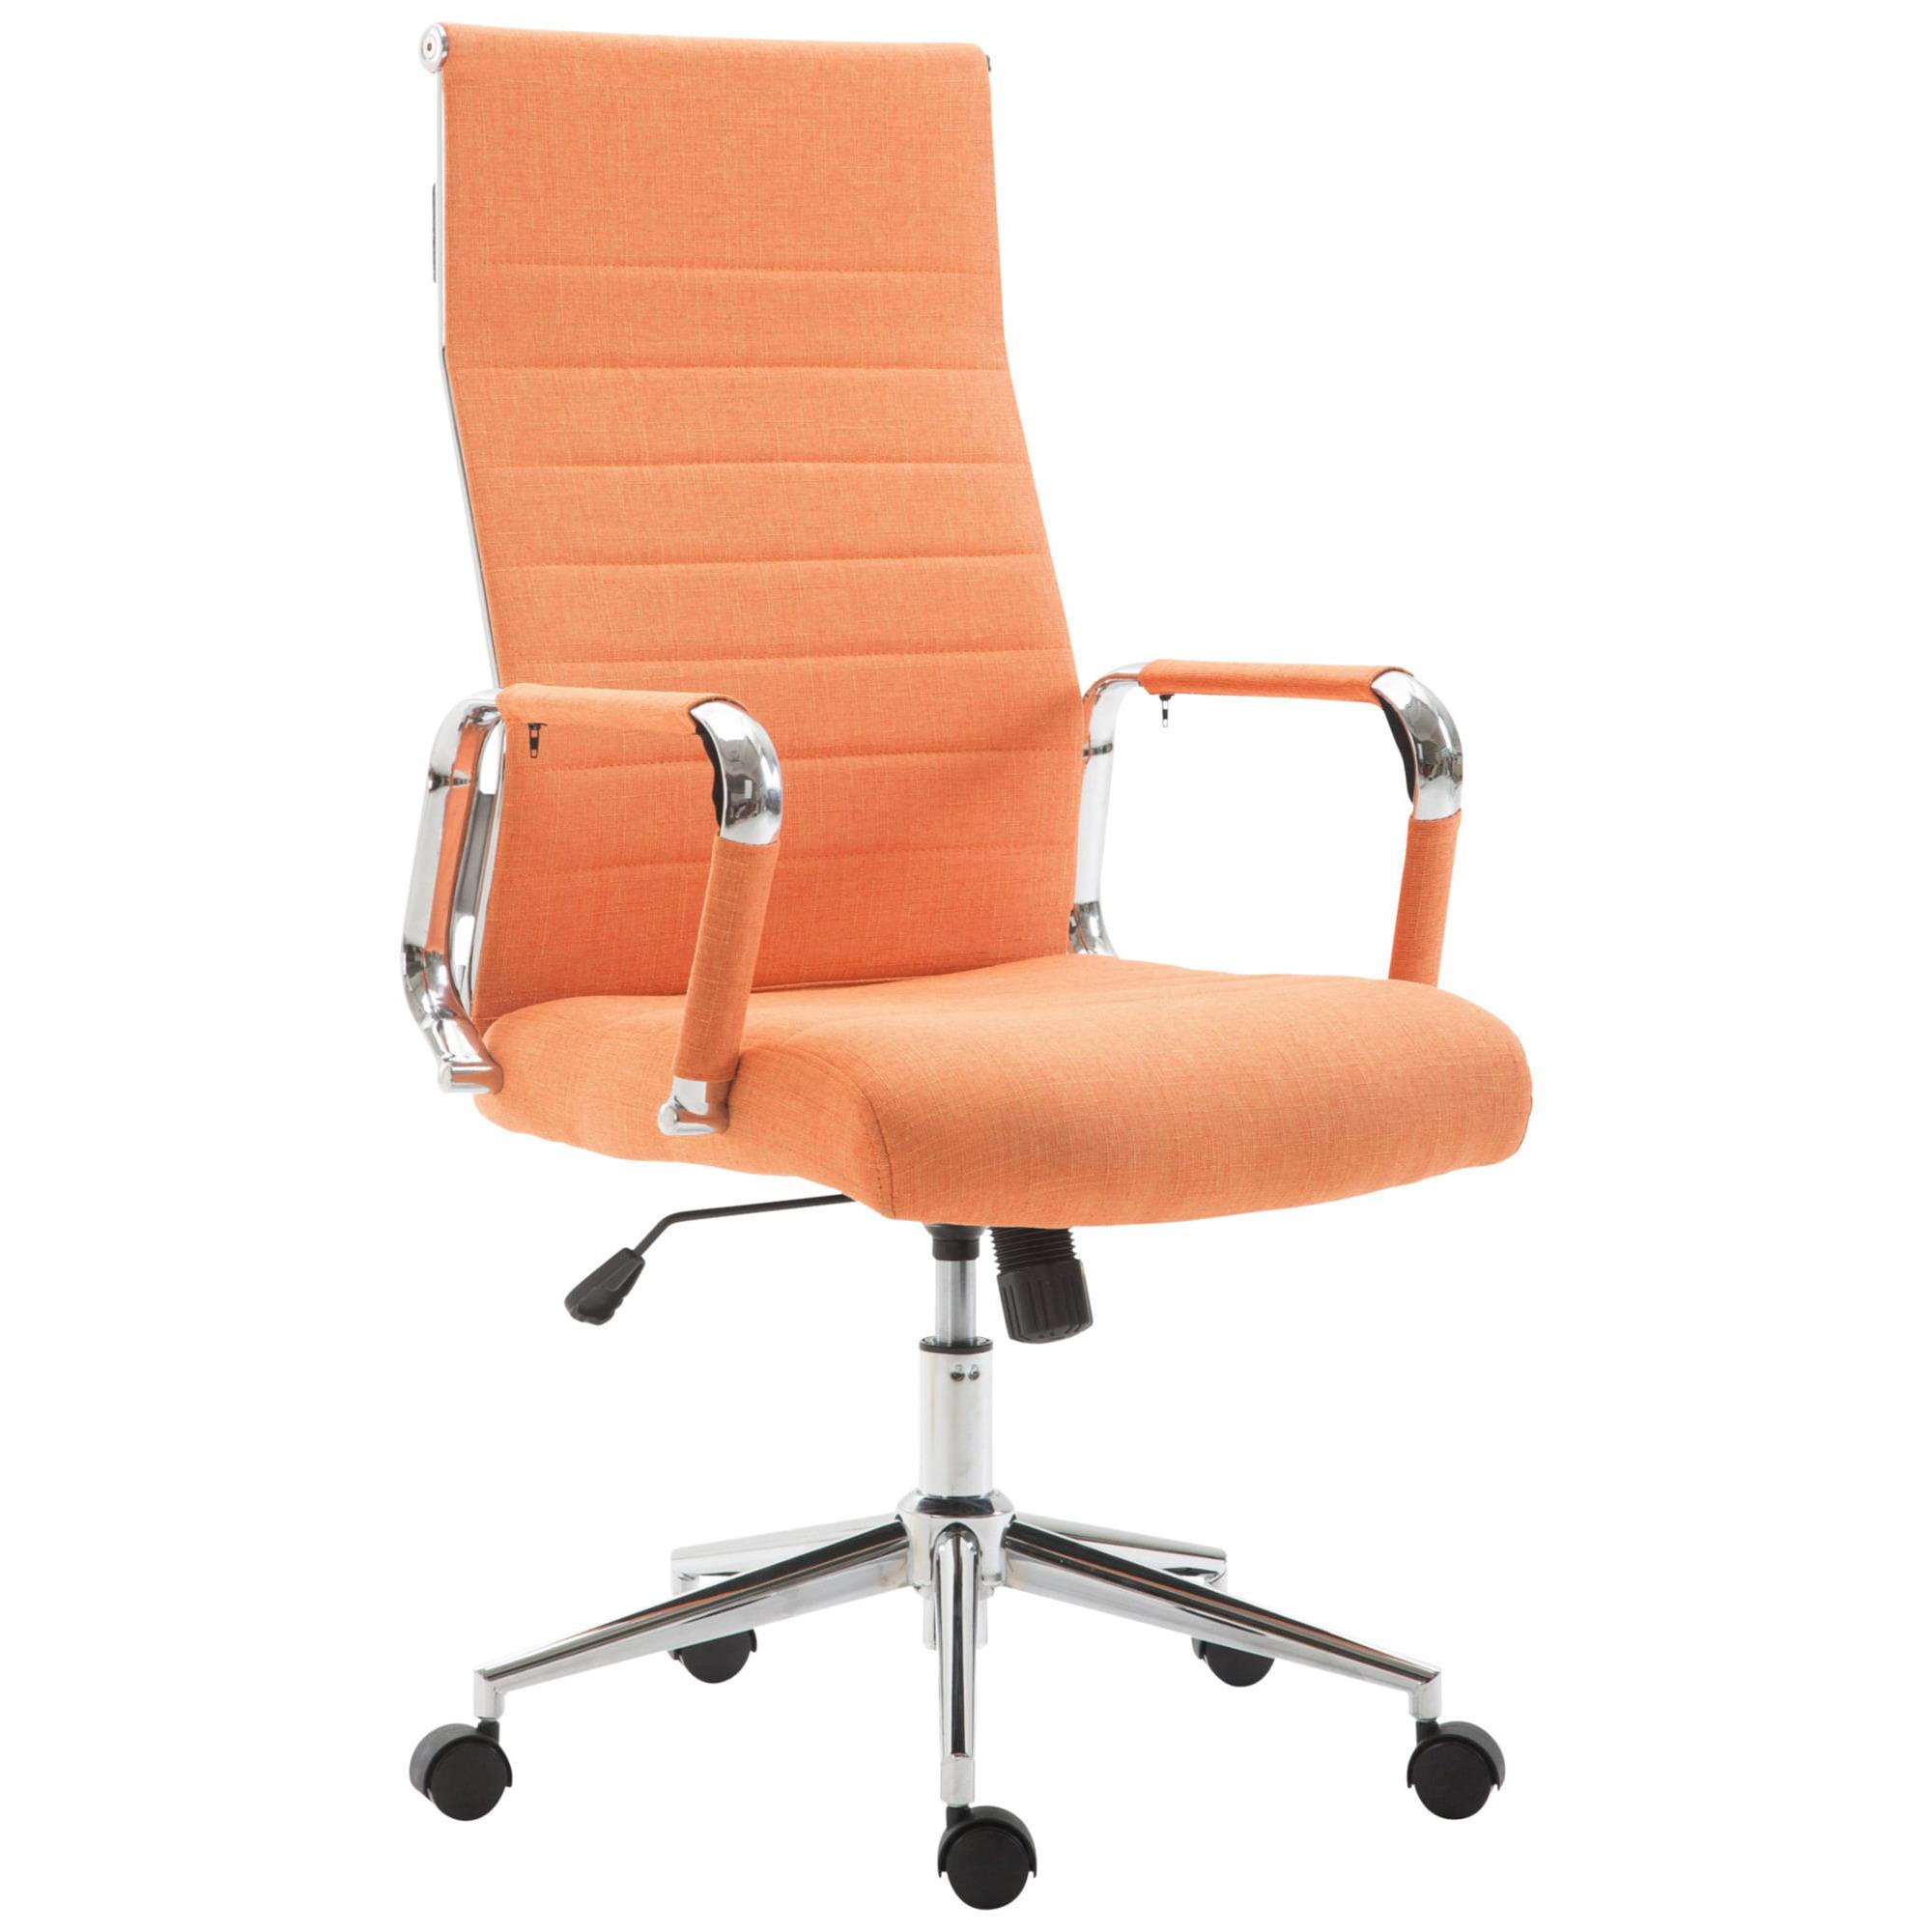 Sedia da Ufficio KOLMU TESSUTO, Design Accattivante, Struttura in Metallo, in Arancione